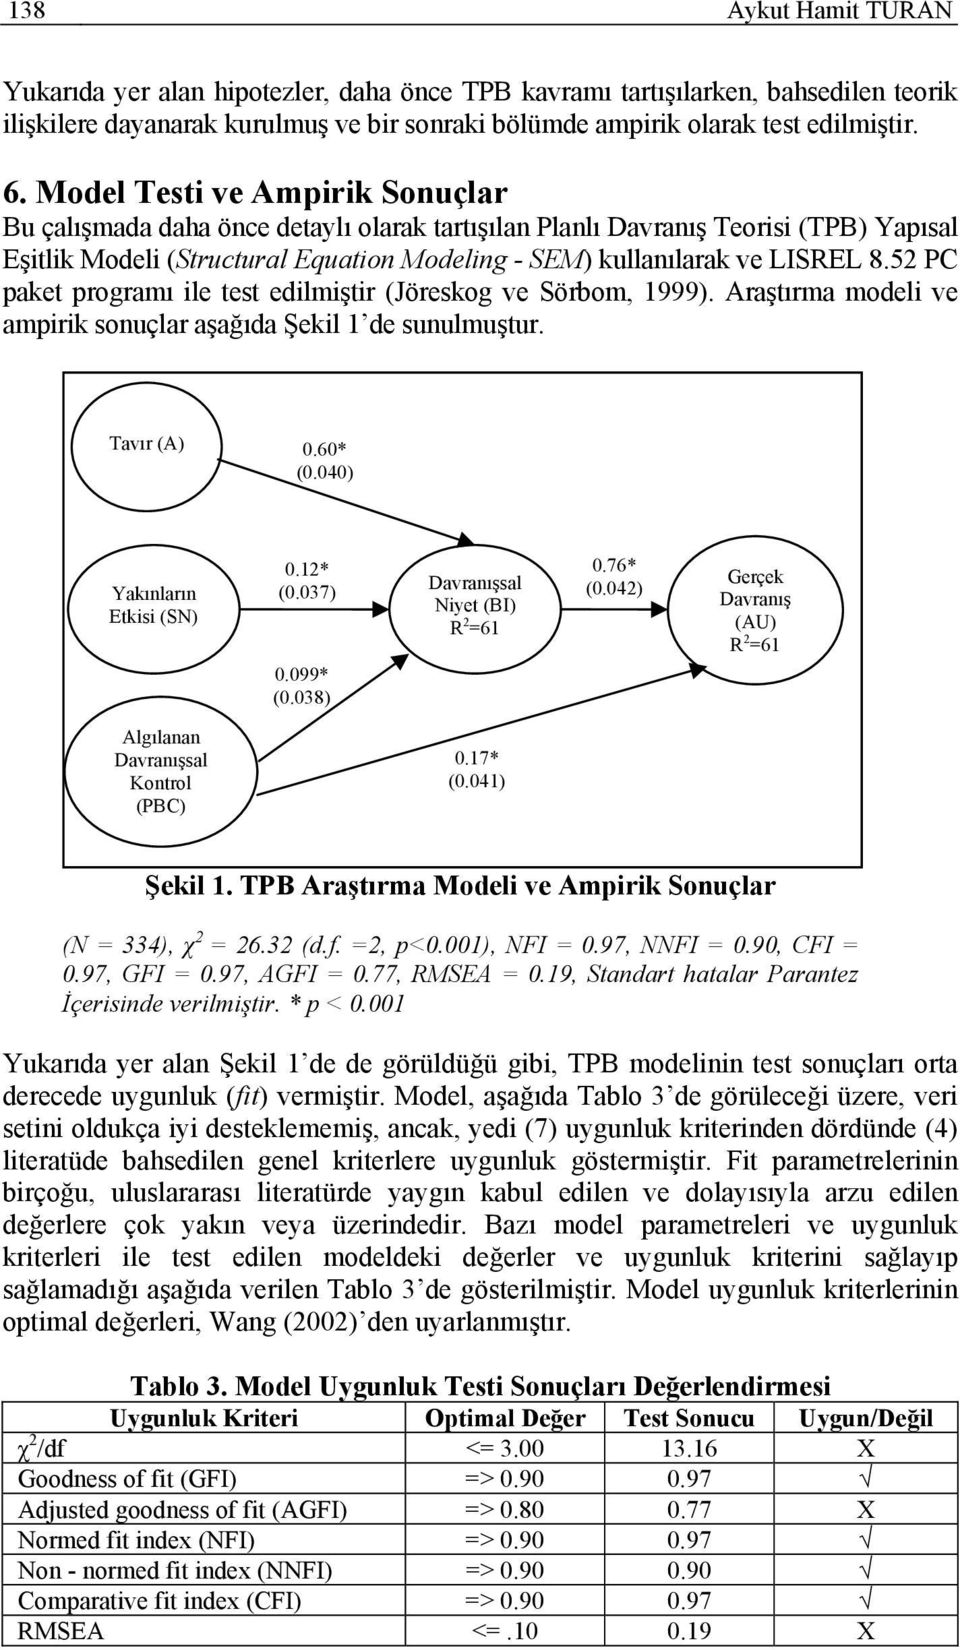 52 PC paket programı ile test edilmiştir (Jöreskog ve Sörbom, 1999). Araştırma modeli ve ampirik sonuçlar aşağıda Şekil 1 de sunulmuştur. Tavır (A) 0.60* (0.040) Yakınların Etkisi (SN) 0.12* (0.